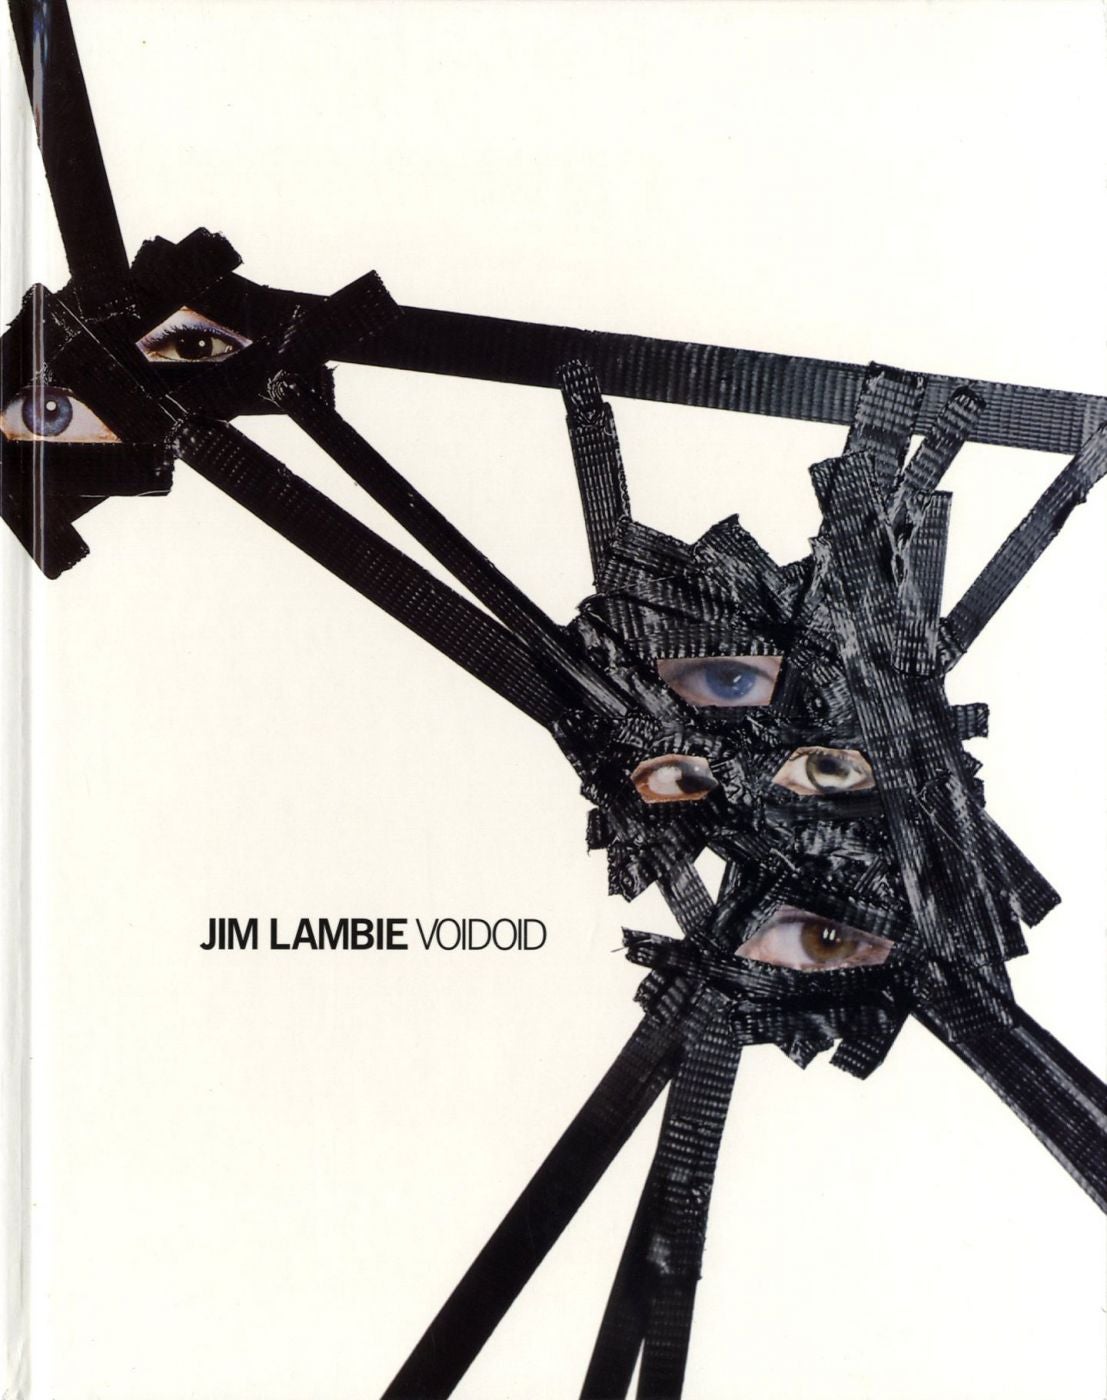 Jim Lambie: Voidoid